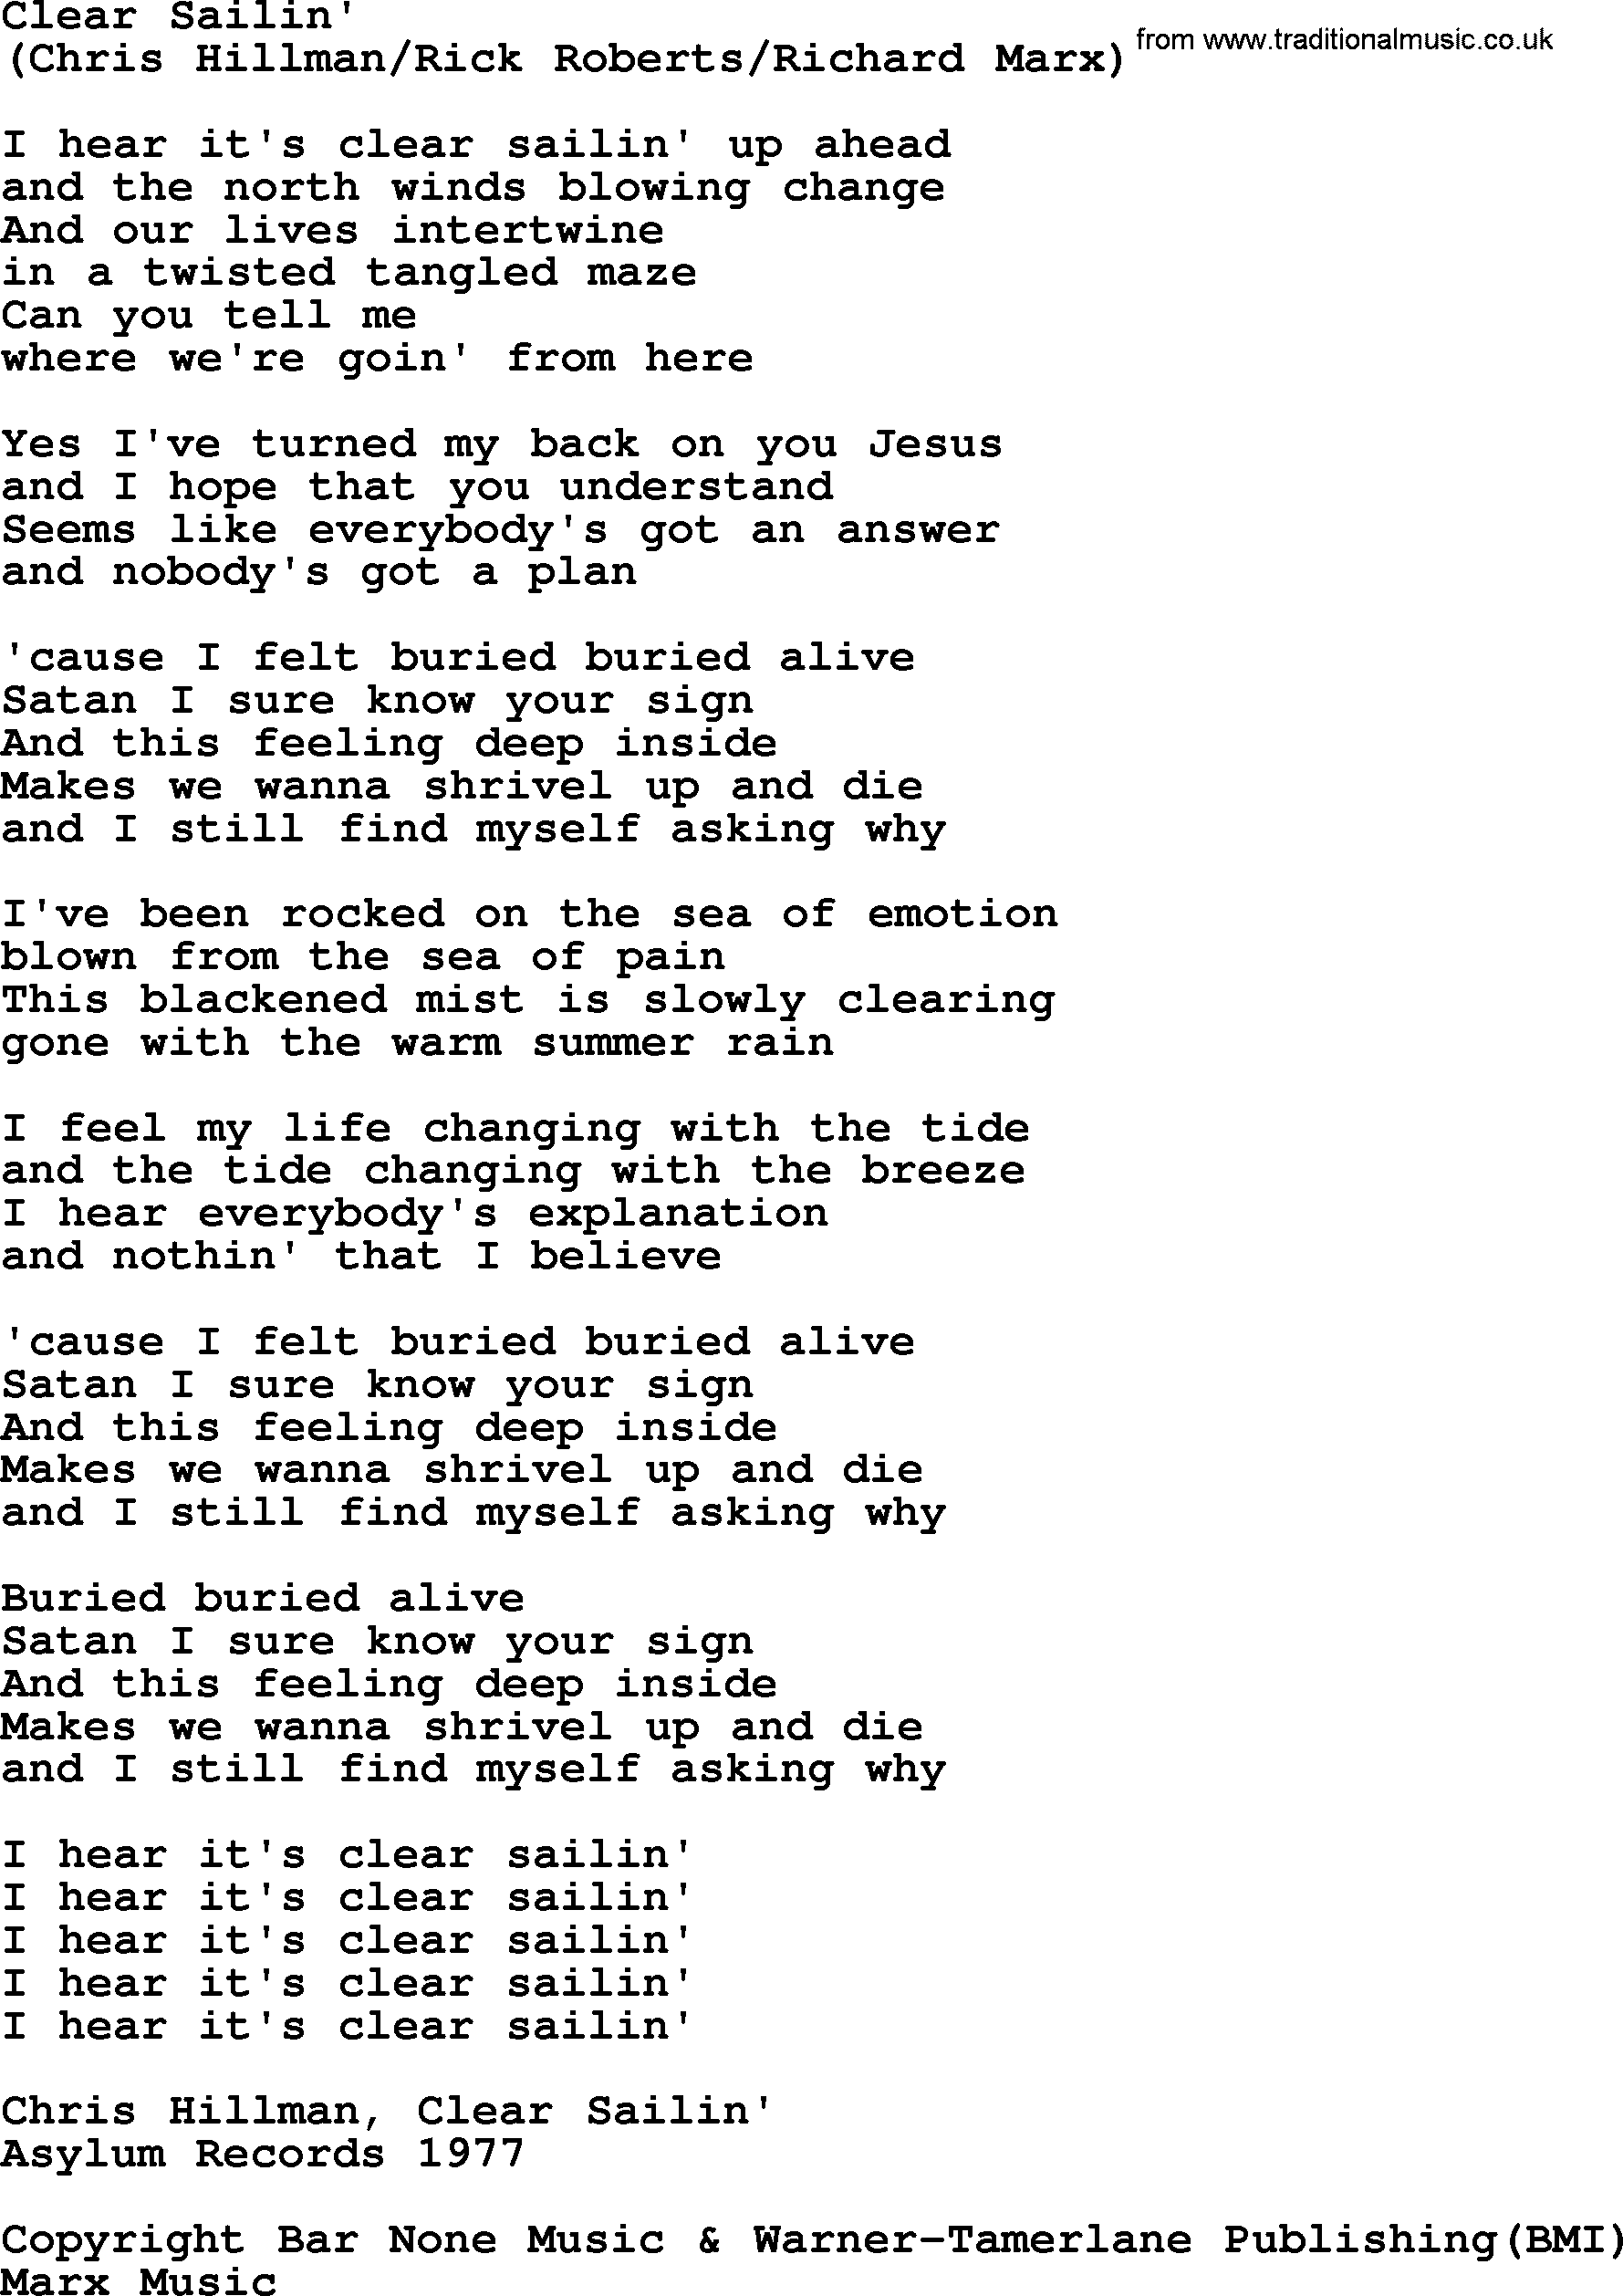 The Byrds song Clear Sailin', lyrics